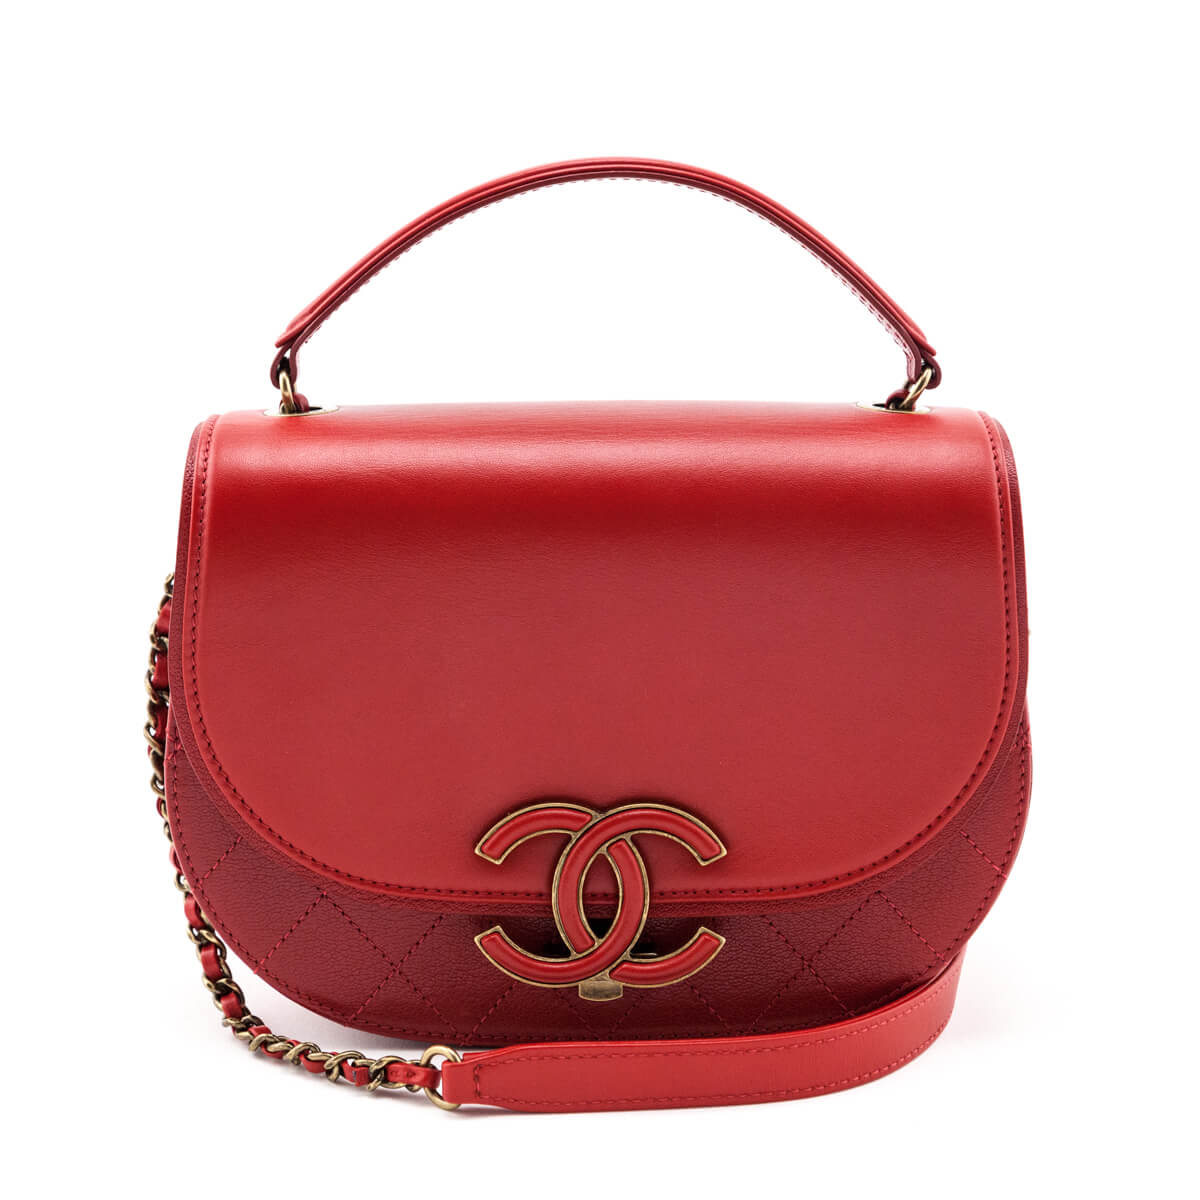 Chanel Messenger Flap White  Handbag Spa  Shop